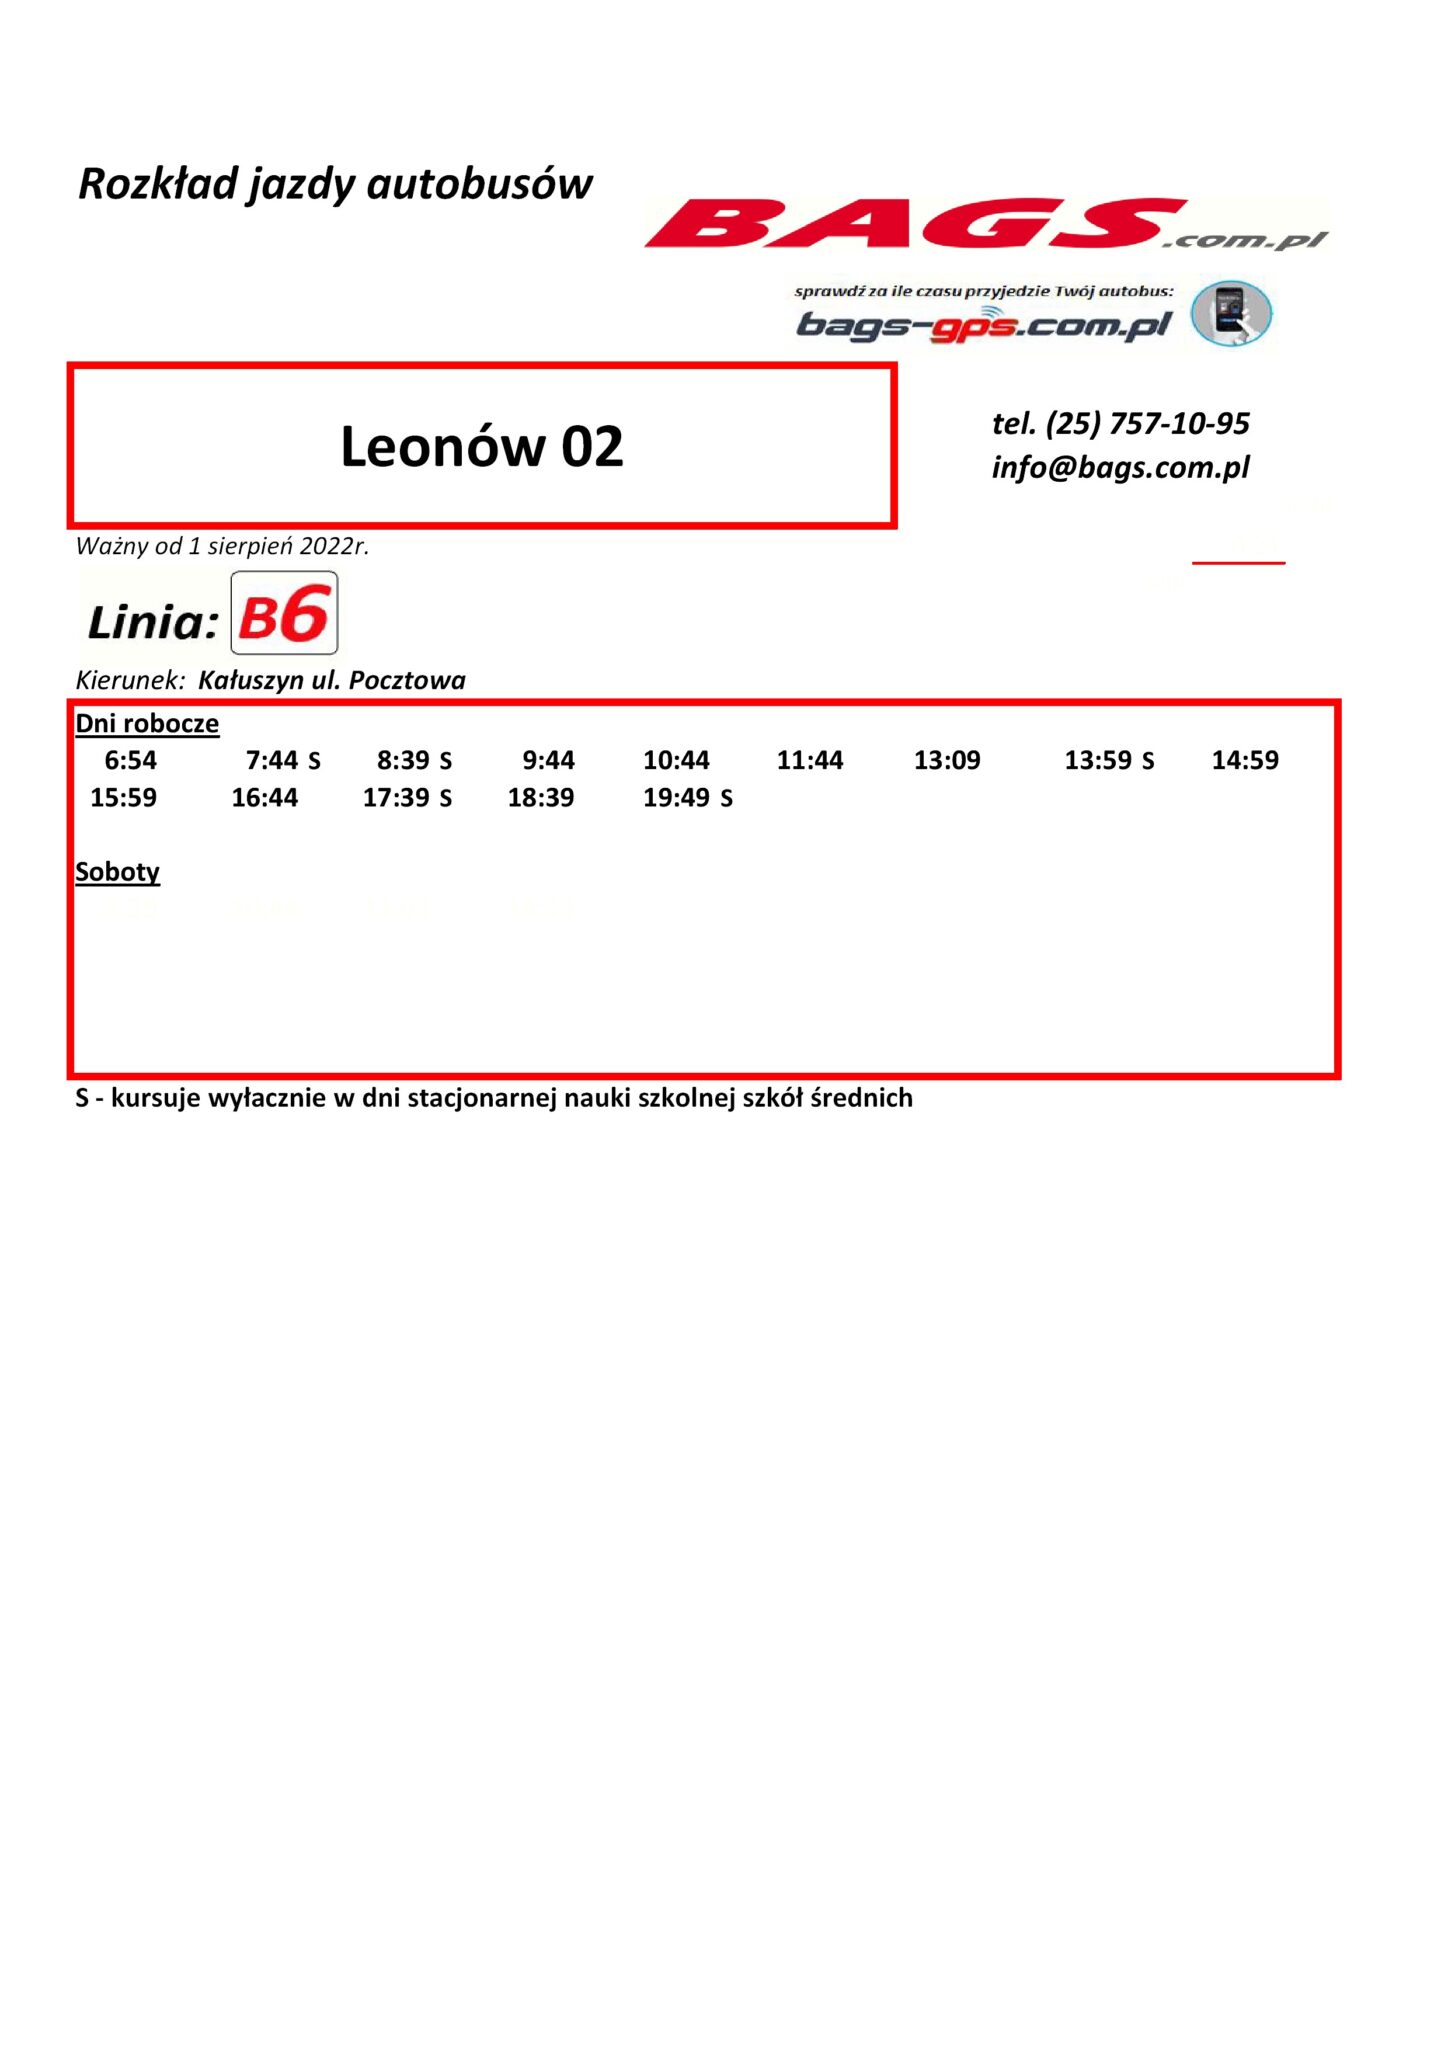 Leonow-02--1448x2048